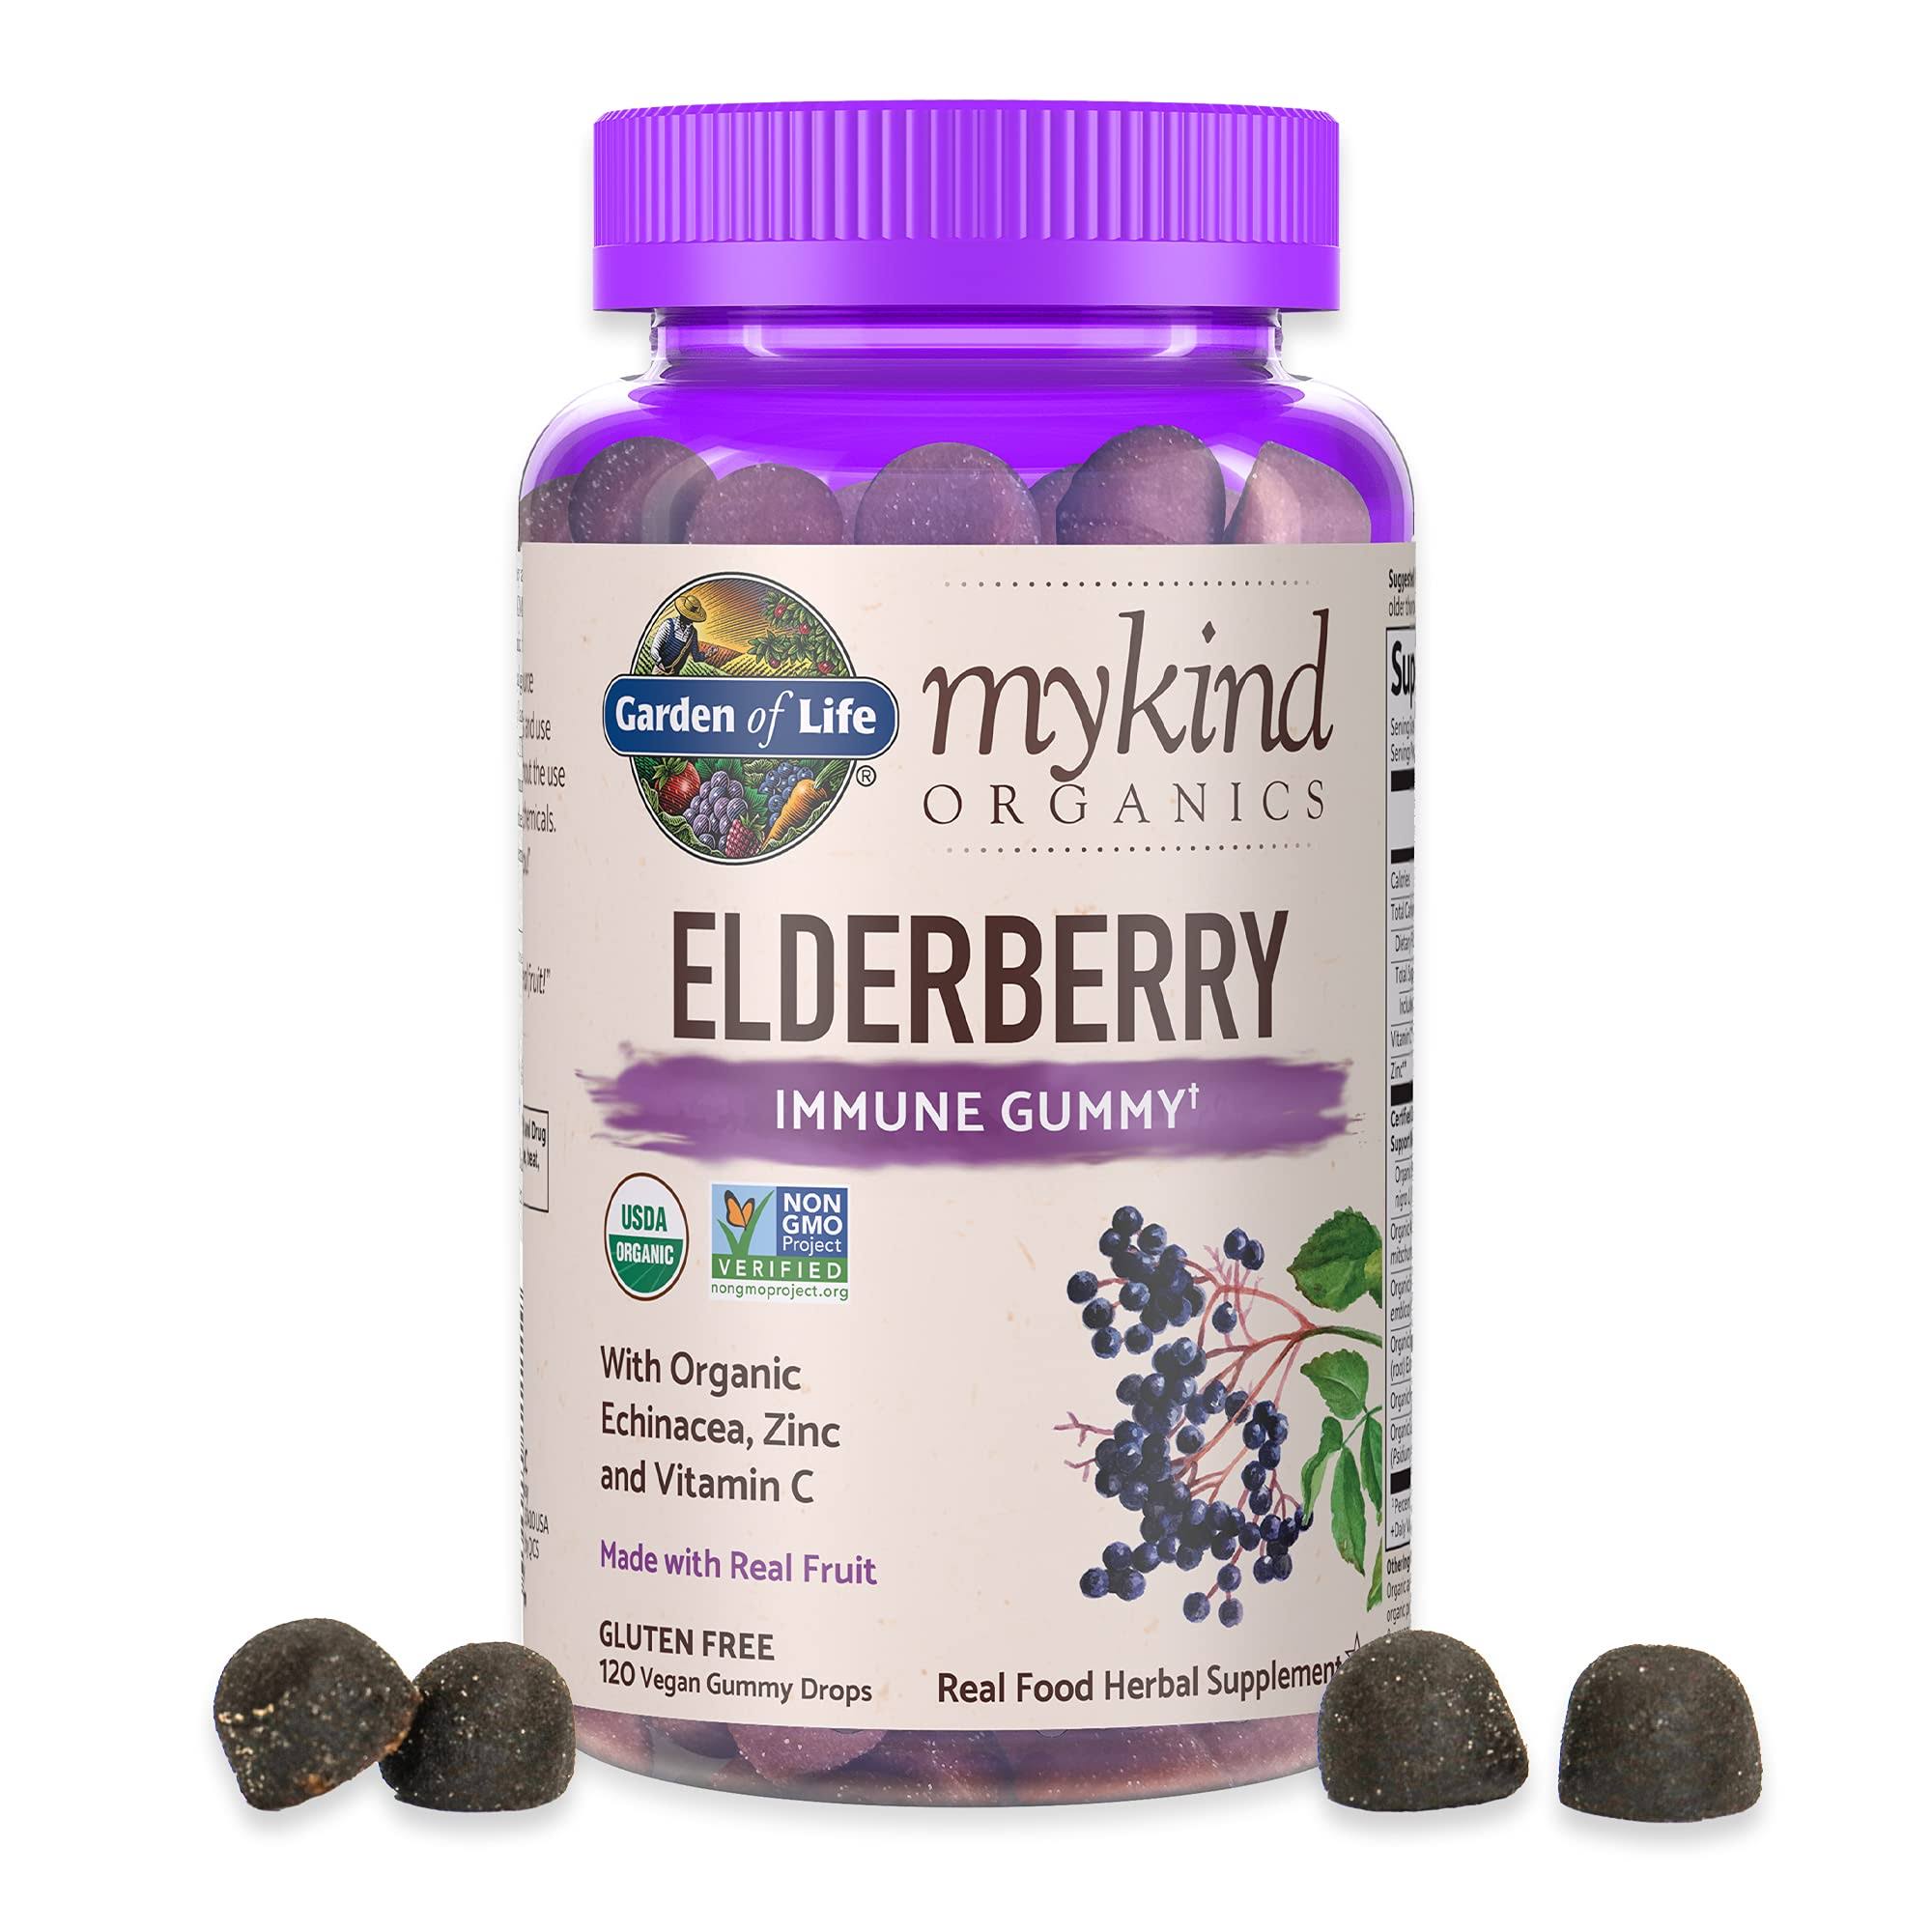 Garden of Life Mykind Organics Elderberry Immune Gummy Herbal Supplement - 120ct